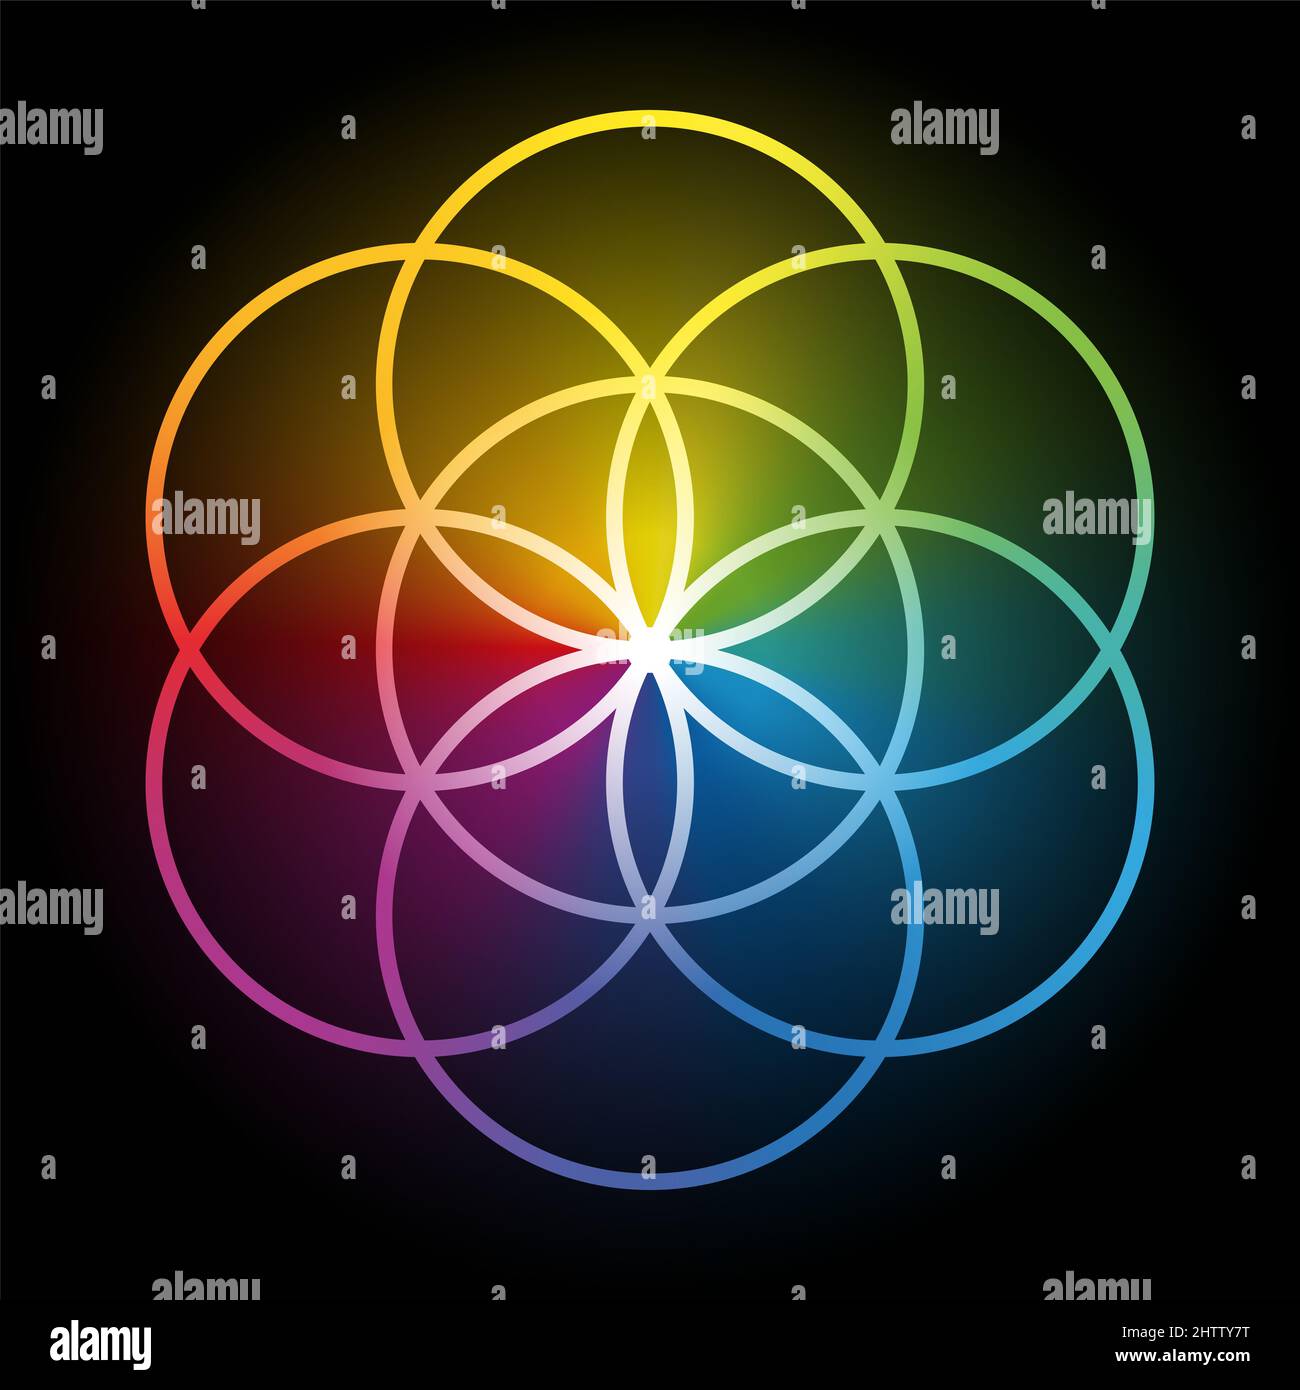 Rainbow Seed of Life, plus de noir. Figure géométrique, composée de 7 cercles chevauchants de même taille, formant une structure symétrique hexagonale. Banque D'Images